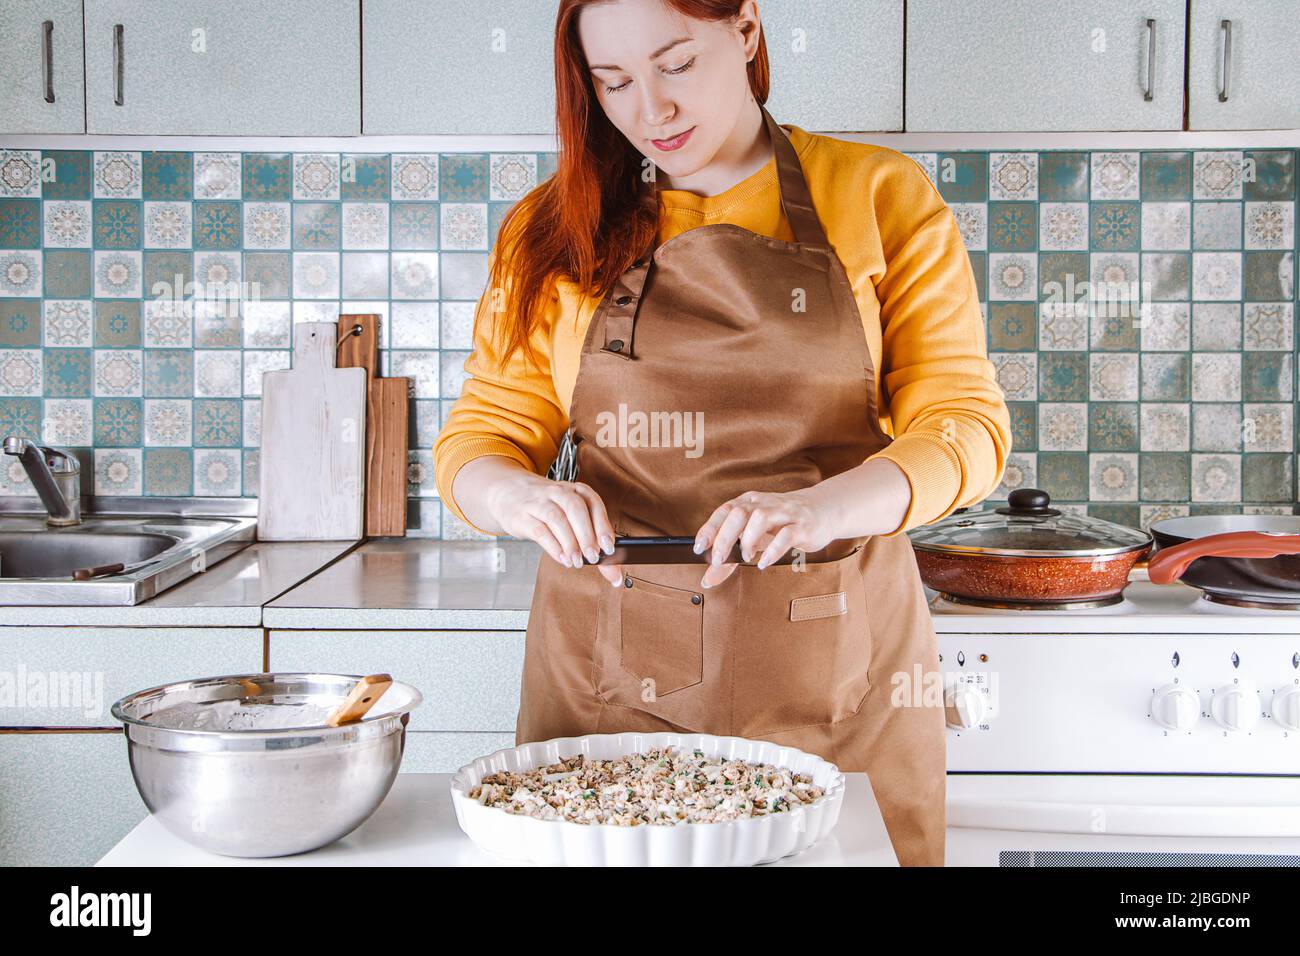 Junge Frau kocht in der heimischen Küche und fotografiert Lebensmittel für soziale Medien. Blogger schreibt einen kulinarischen Blog. Lifestyle, Home-Leisure-Konzept. Stockfoto